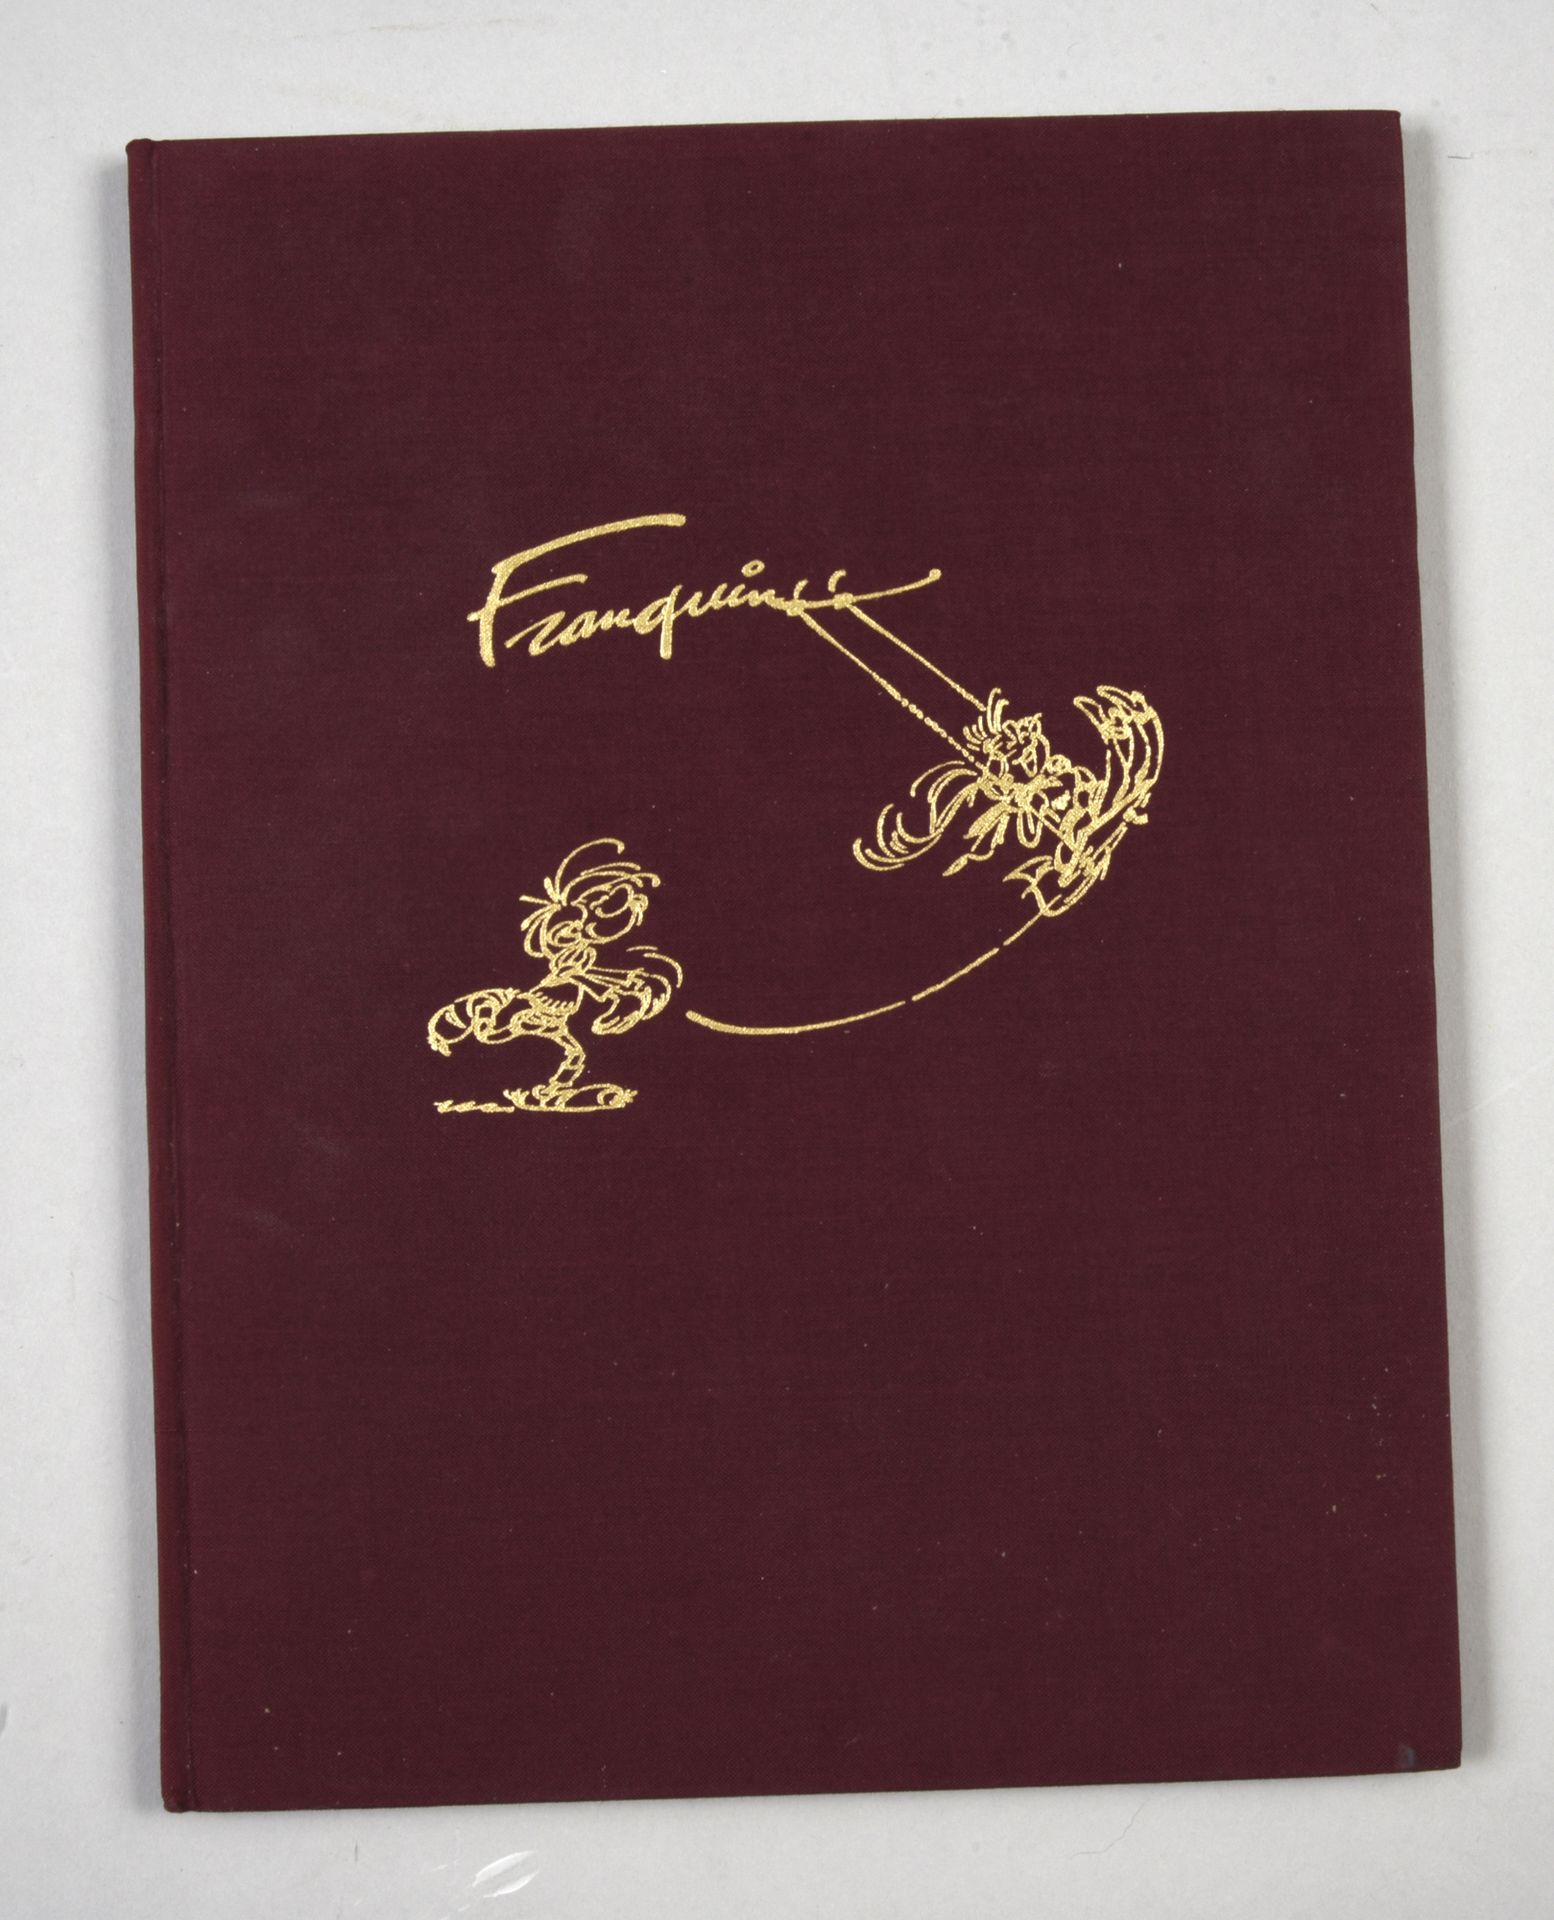 FRANQUIN Le livre d'or Franquin.
Tirage de tête (1982)
Proche du neuf - Ed. Goup&hellip;